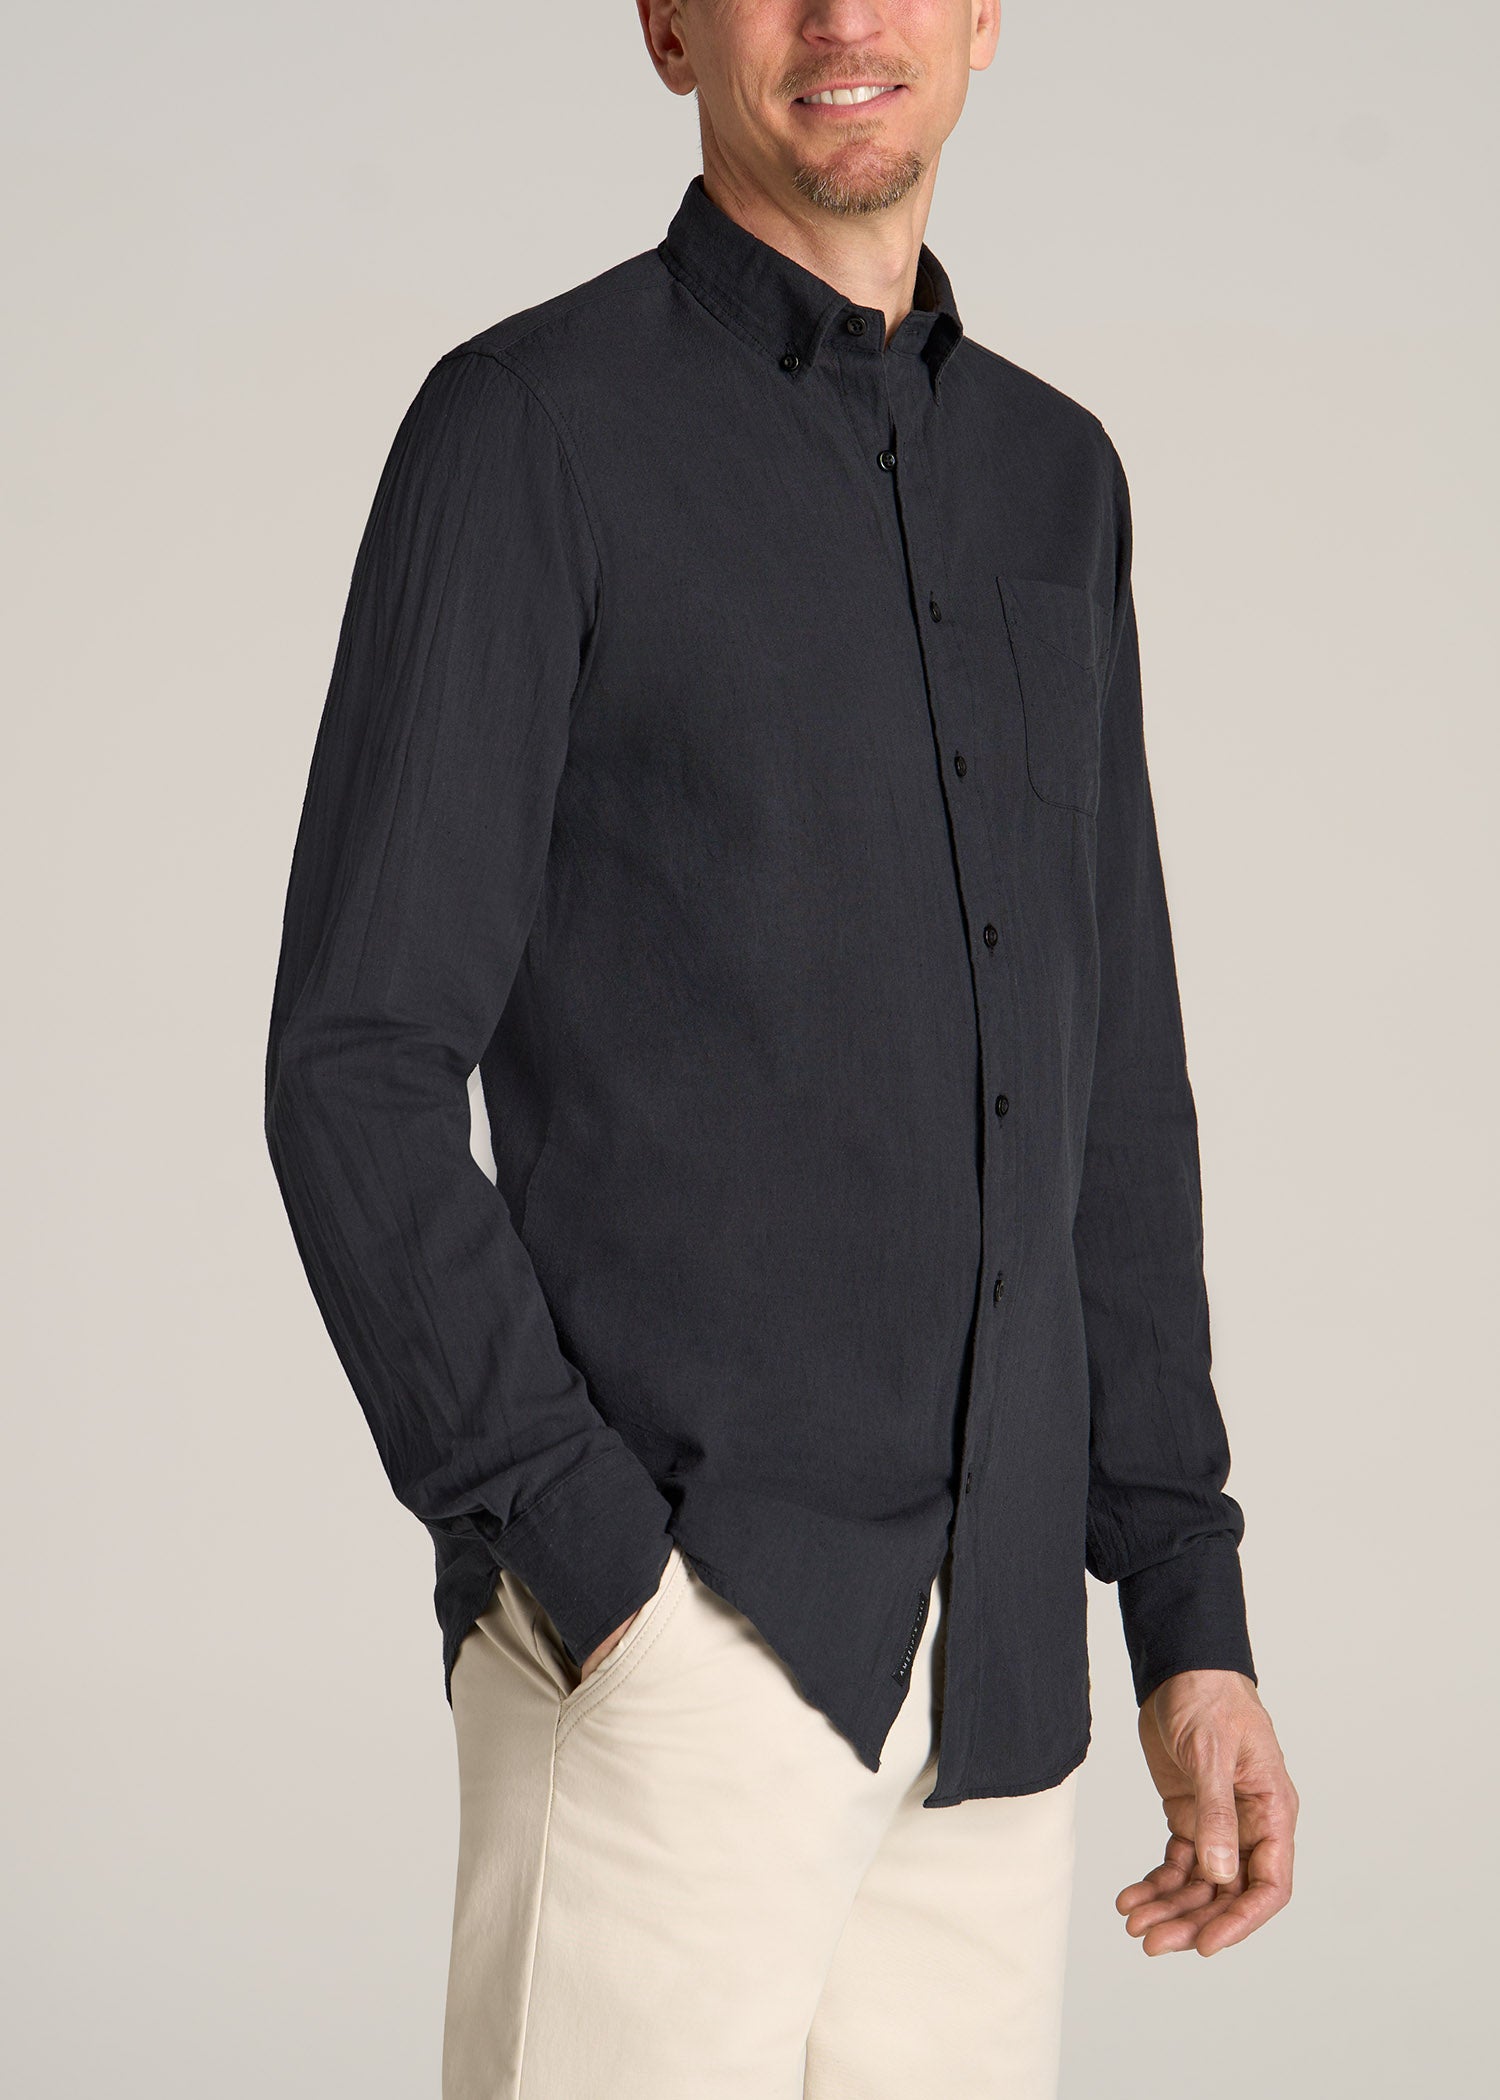 Long Sleeve Shirt for Tall Men: Linen Black Shirt